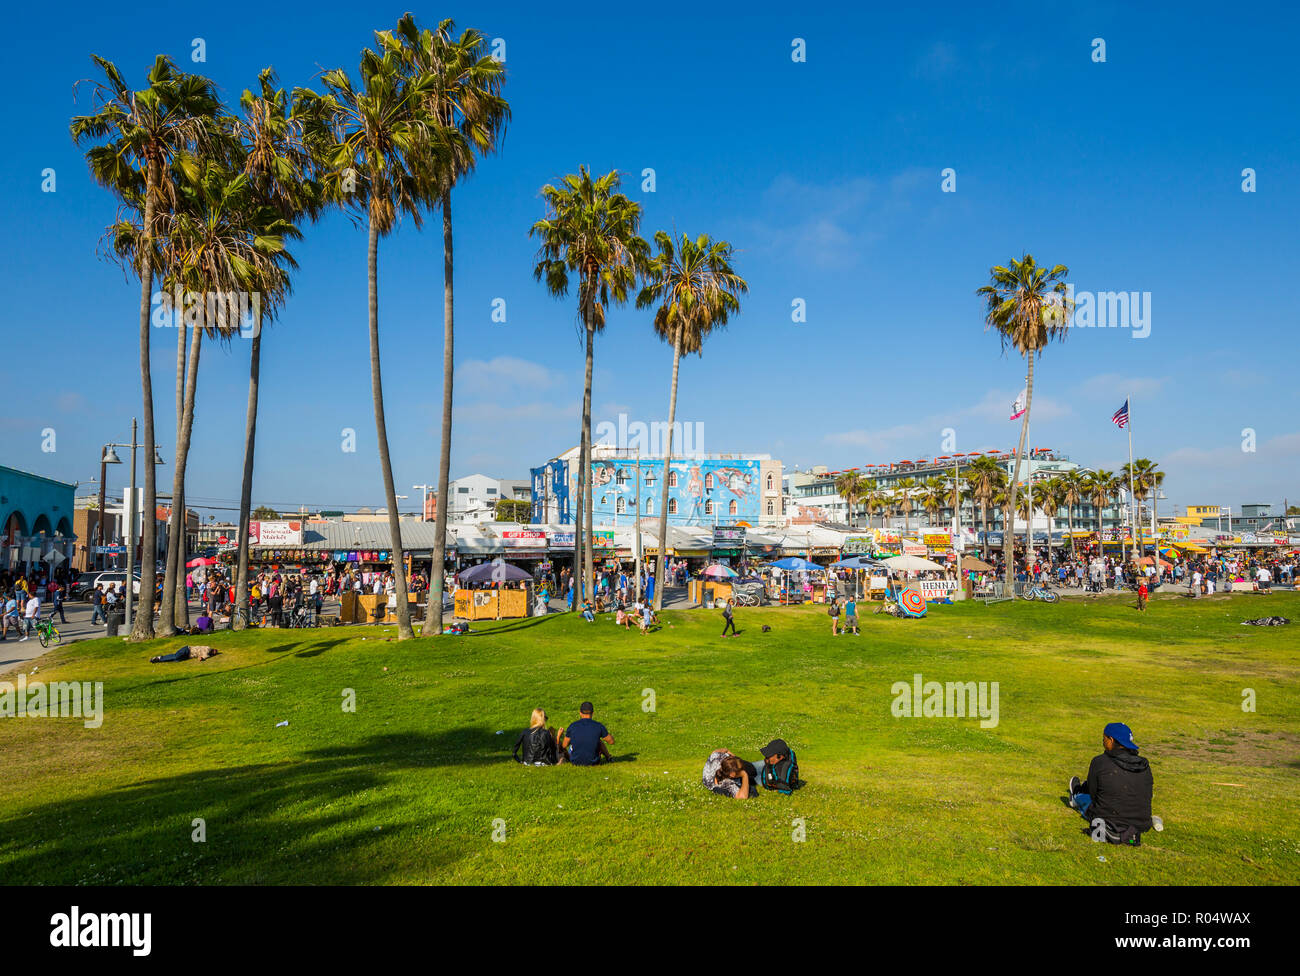 Blick auf Palmen und Besucher am Ocean Front Walk in Venice Beach, Los Angeles, Kalifornien, Vereinigte Staaten von Amerika, Nordamerika Stockfoto